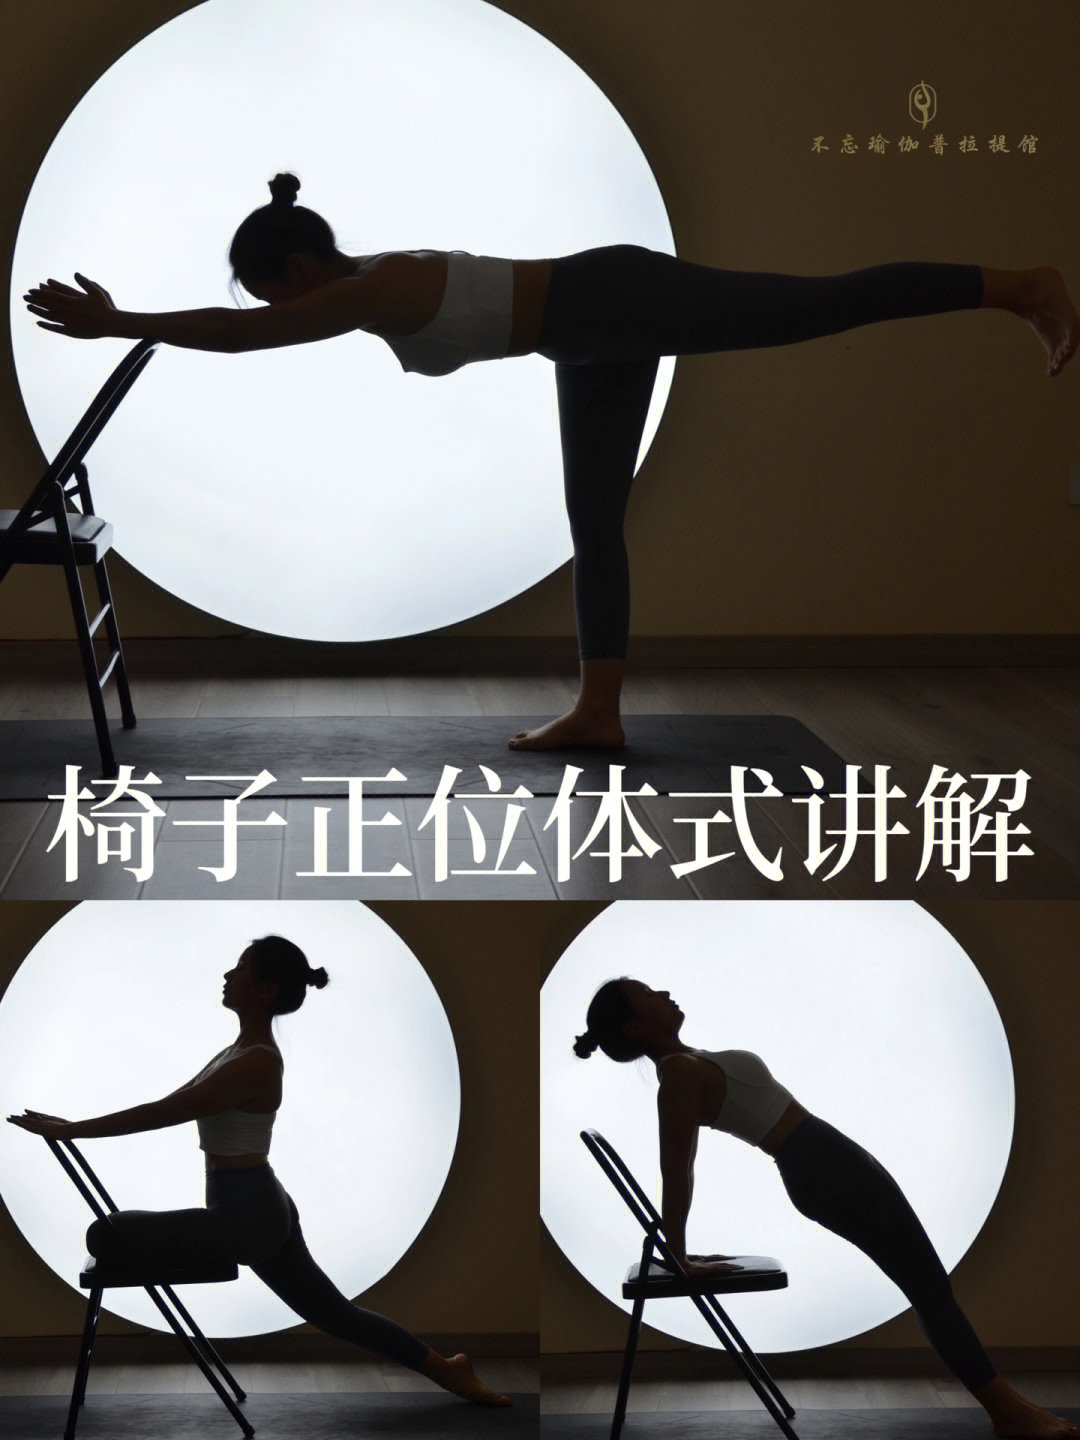 91椅子瑜伽是艾扬格正位瑜伽的一个分支在椅子上做体式更能找到自己